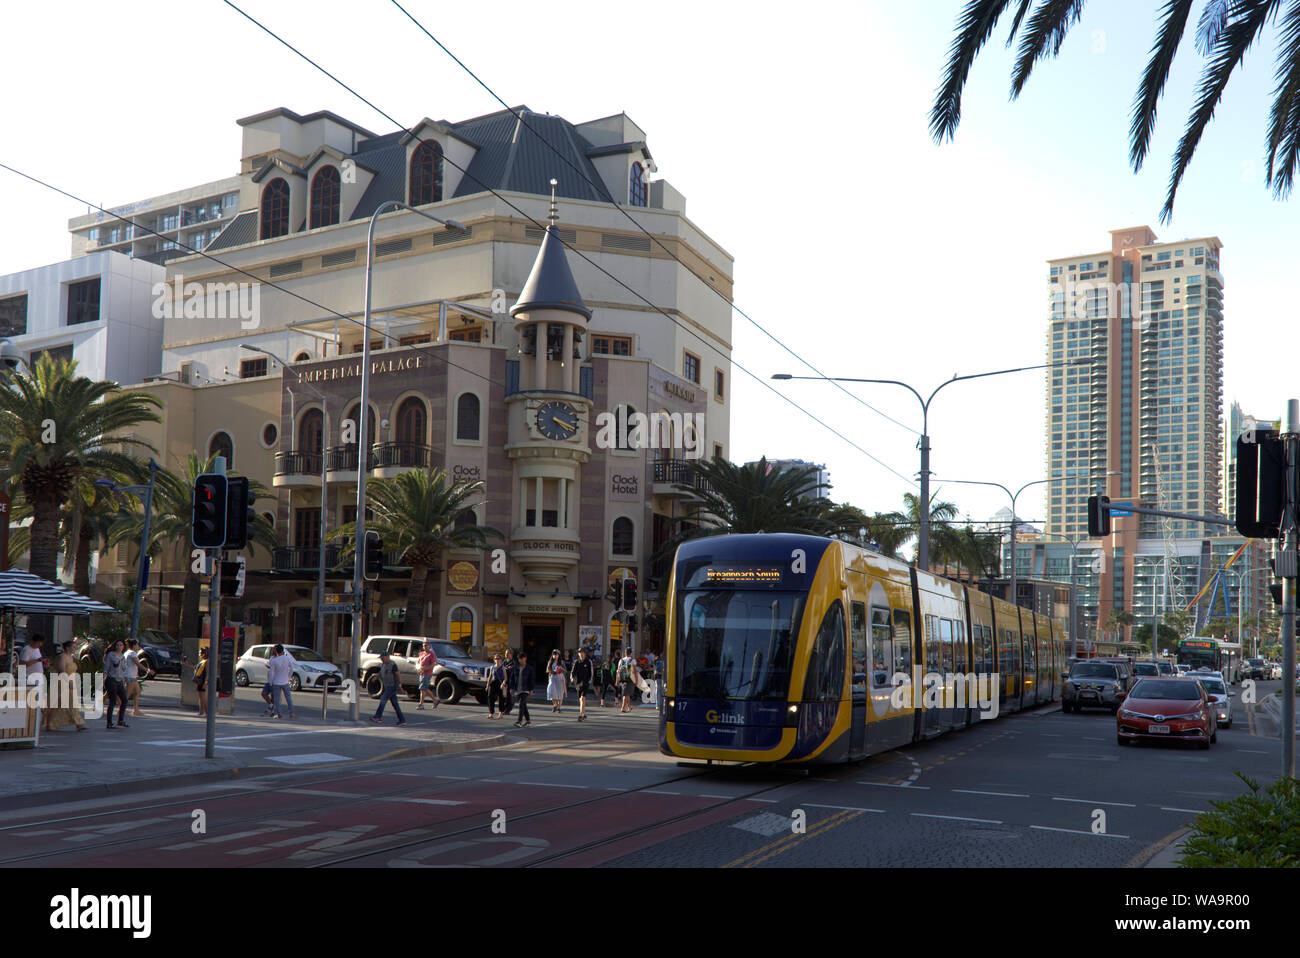 La Gold Coast) Glink (light rail Tram passant à travers le réseau des magasins de détail de la Gold Coast, Queensland, Australie Banque D'Images